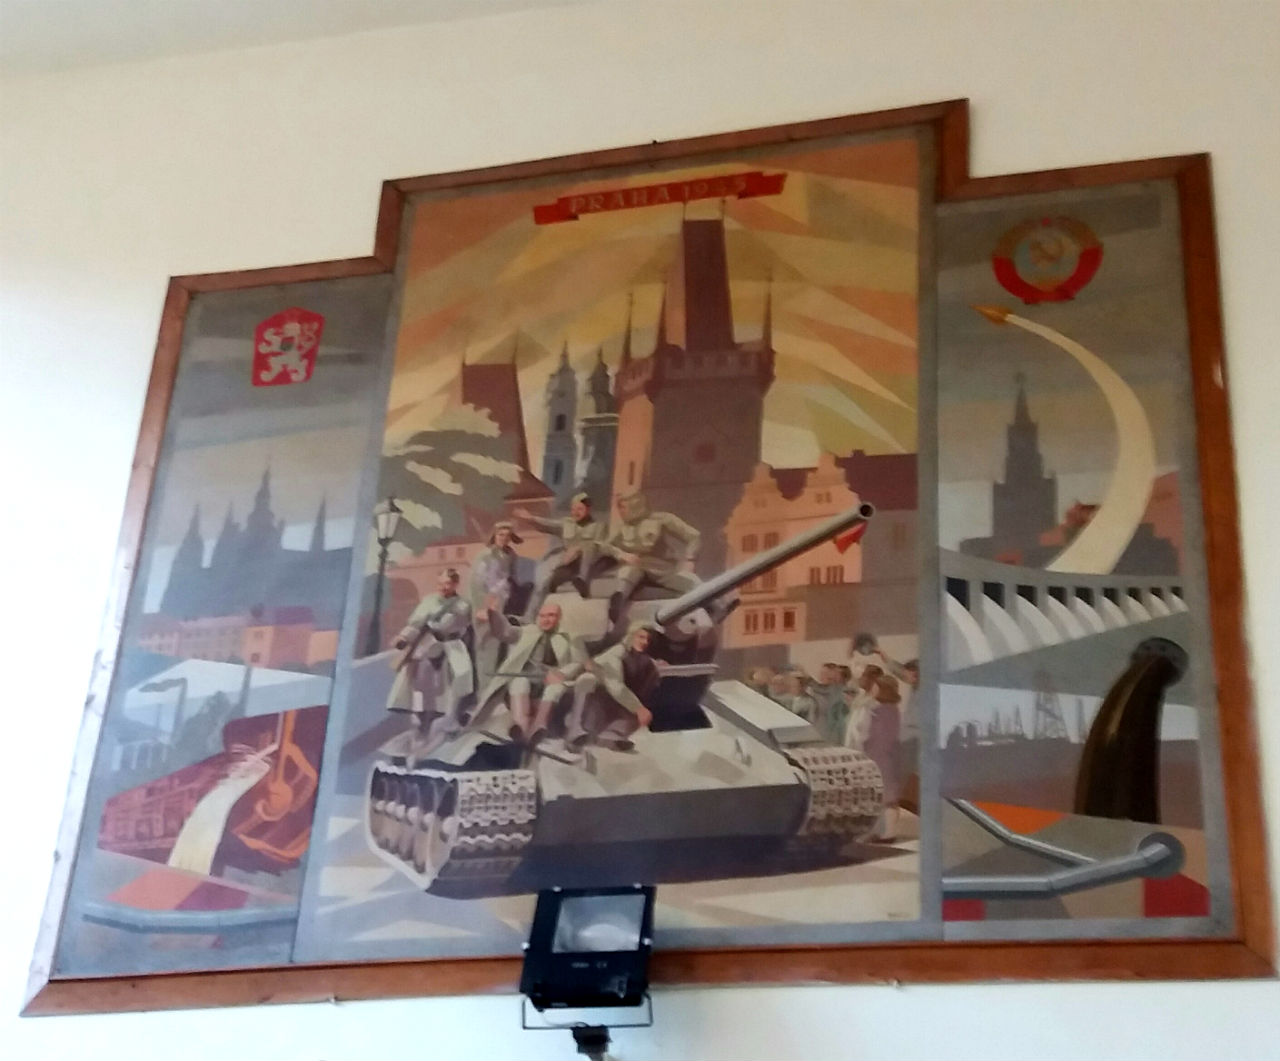 A minőségi követelményekből kimaradt viszont a kommunista jelképek leszerelése, bár ez Tiszacsernyőben élő történelem